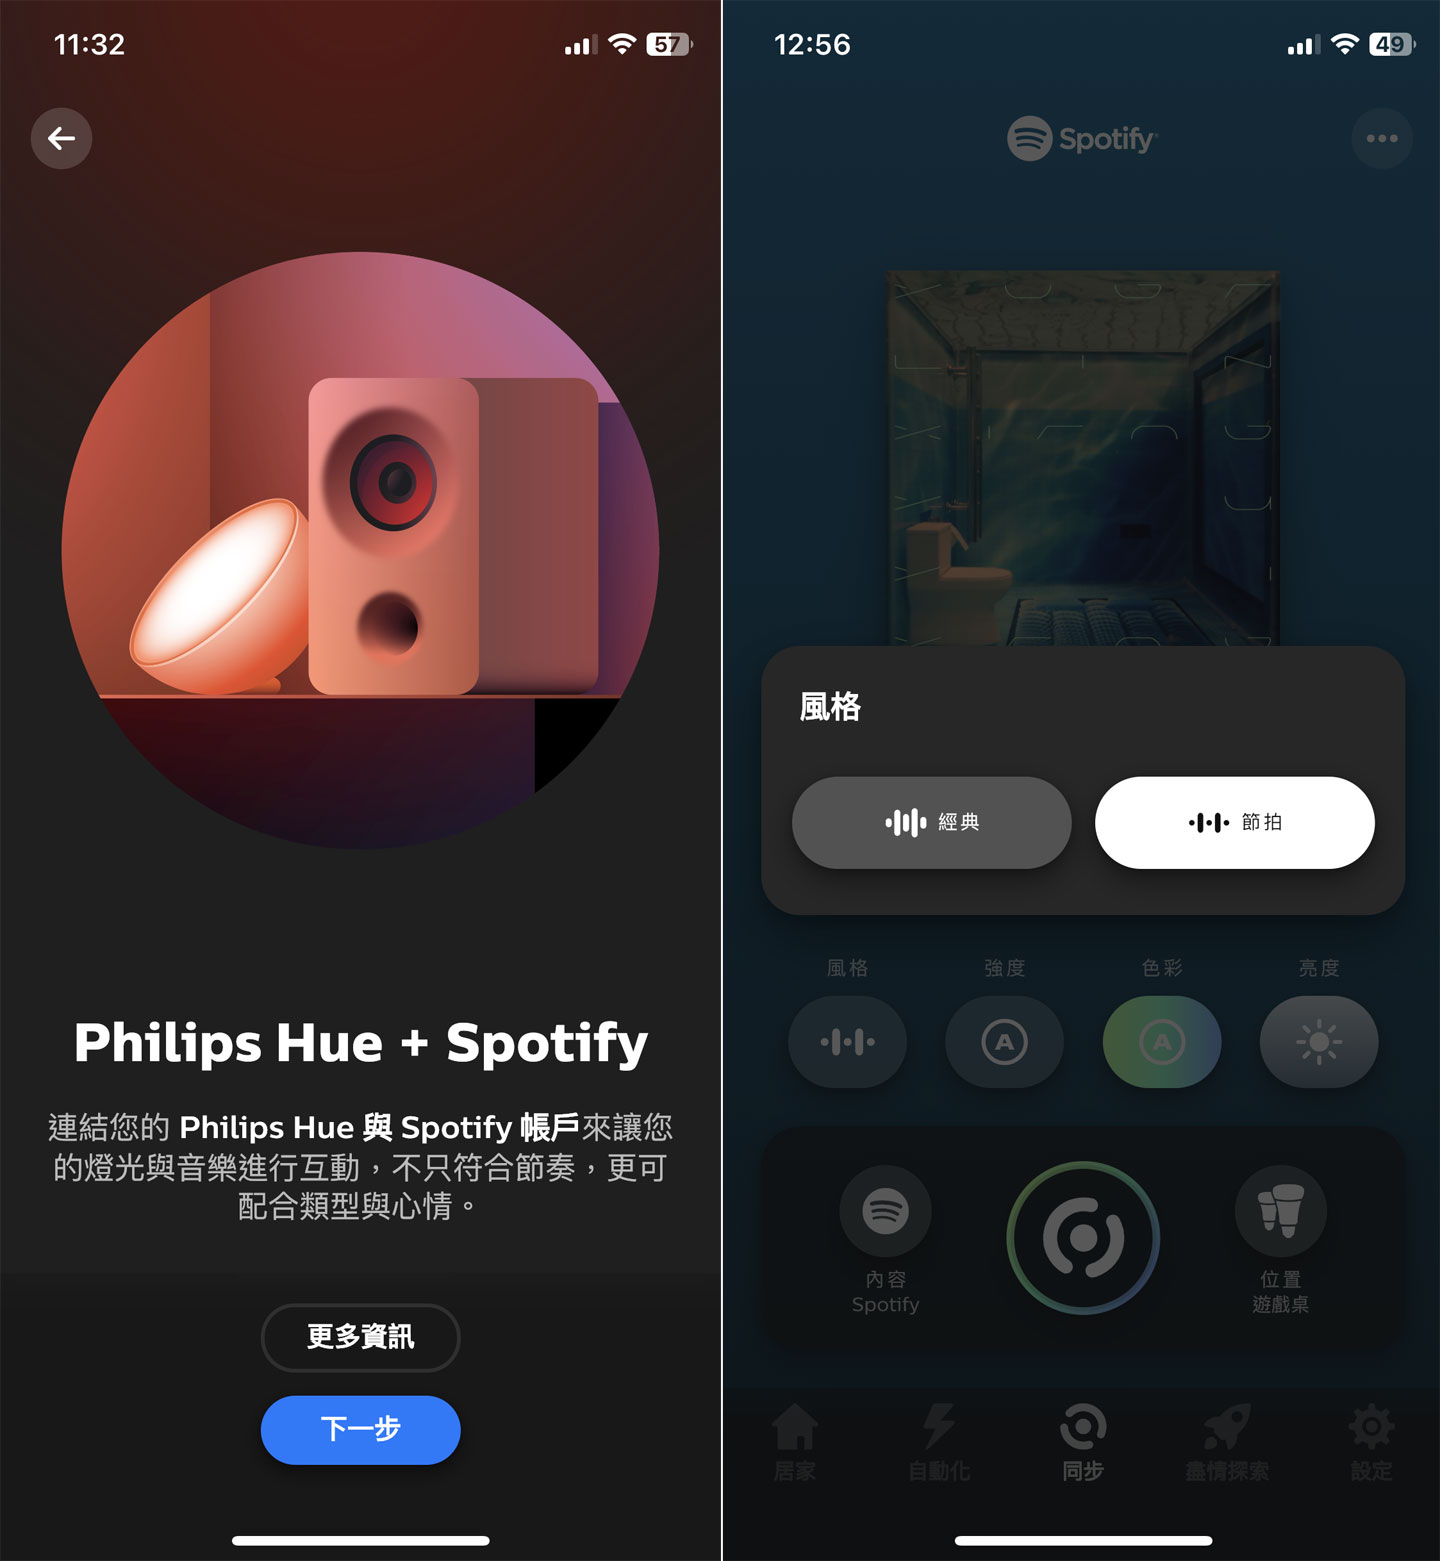 除了影音同之外，Hue 應用程式也能與手機端的 Spotify 串流音樂平台整合，在放音樂時也能有即時動態燈光效果。